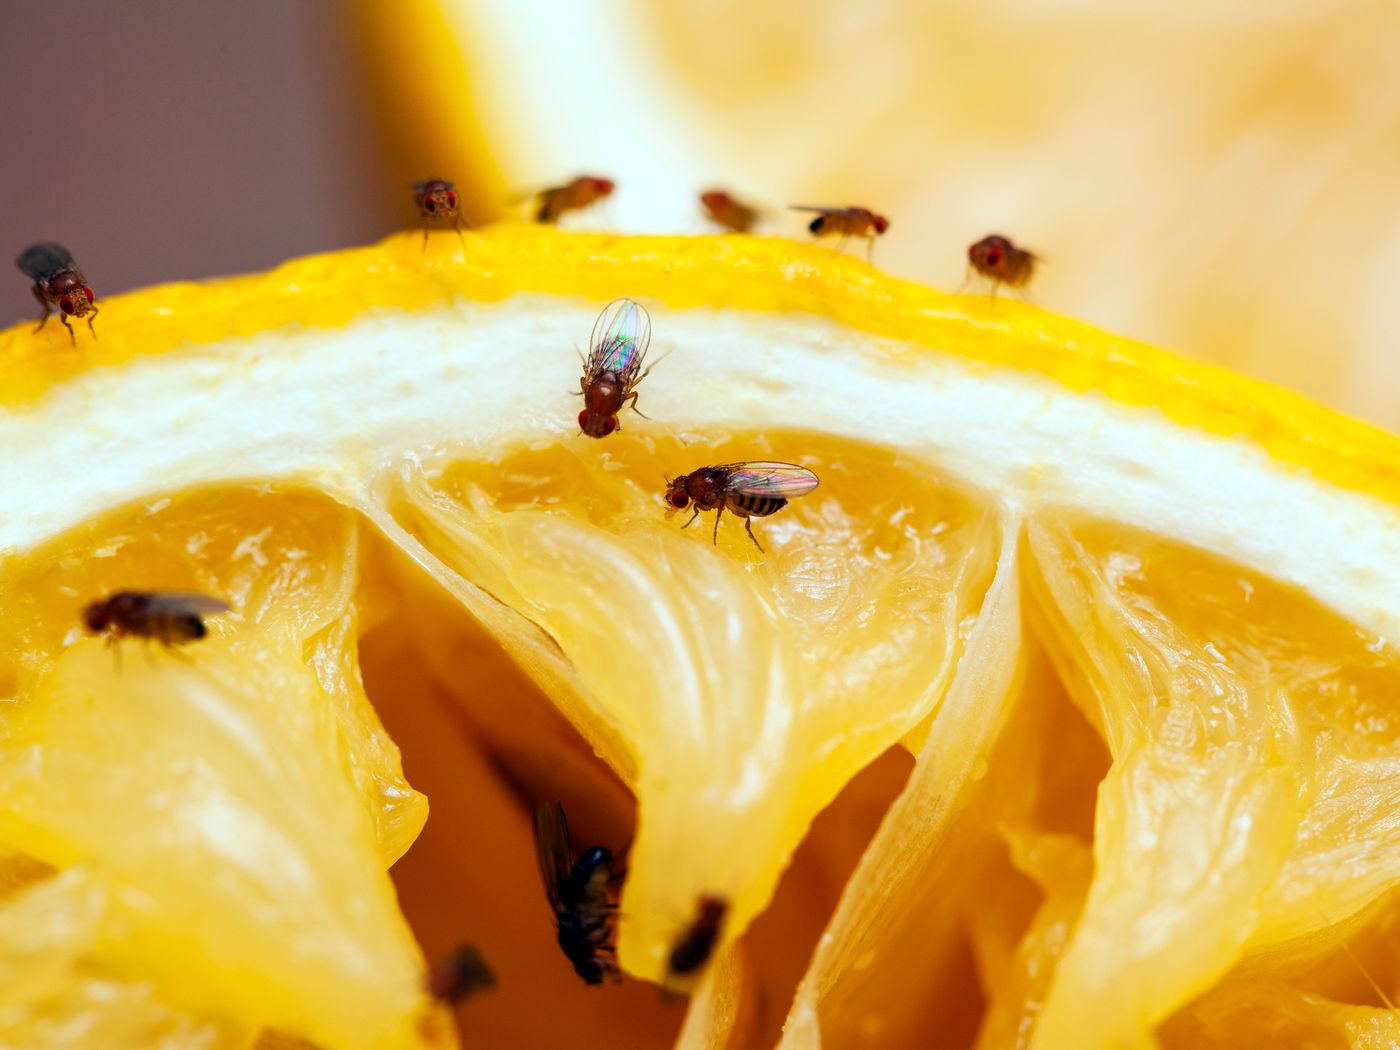 Fruit flies